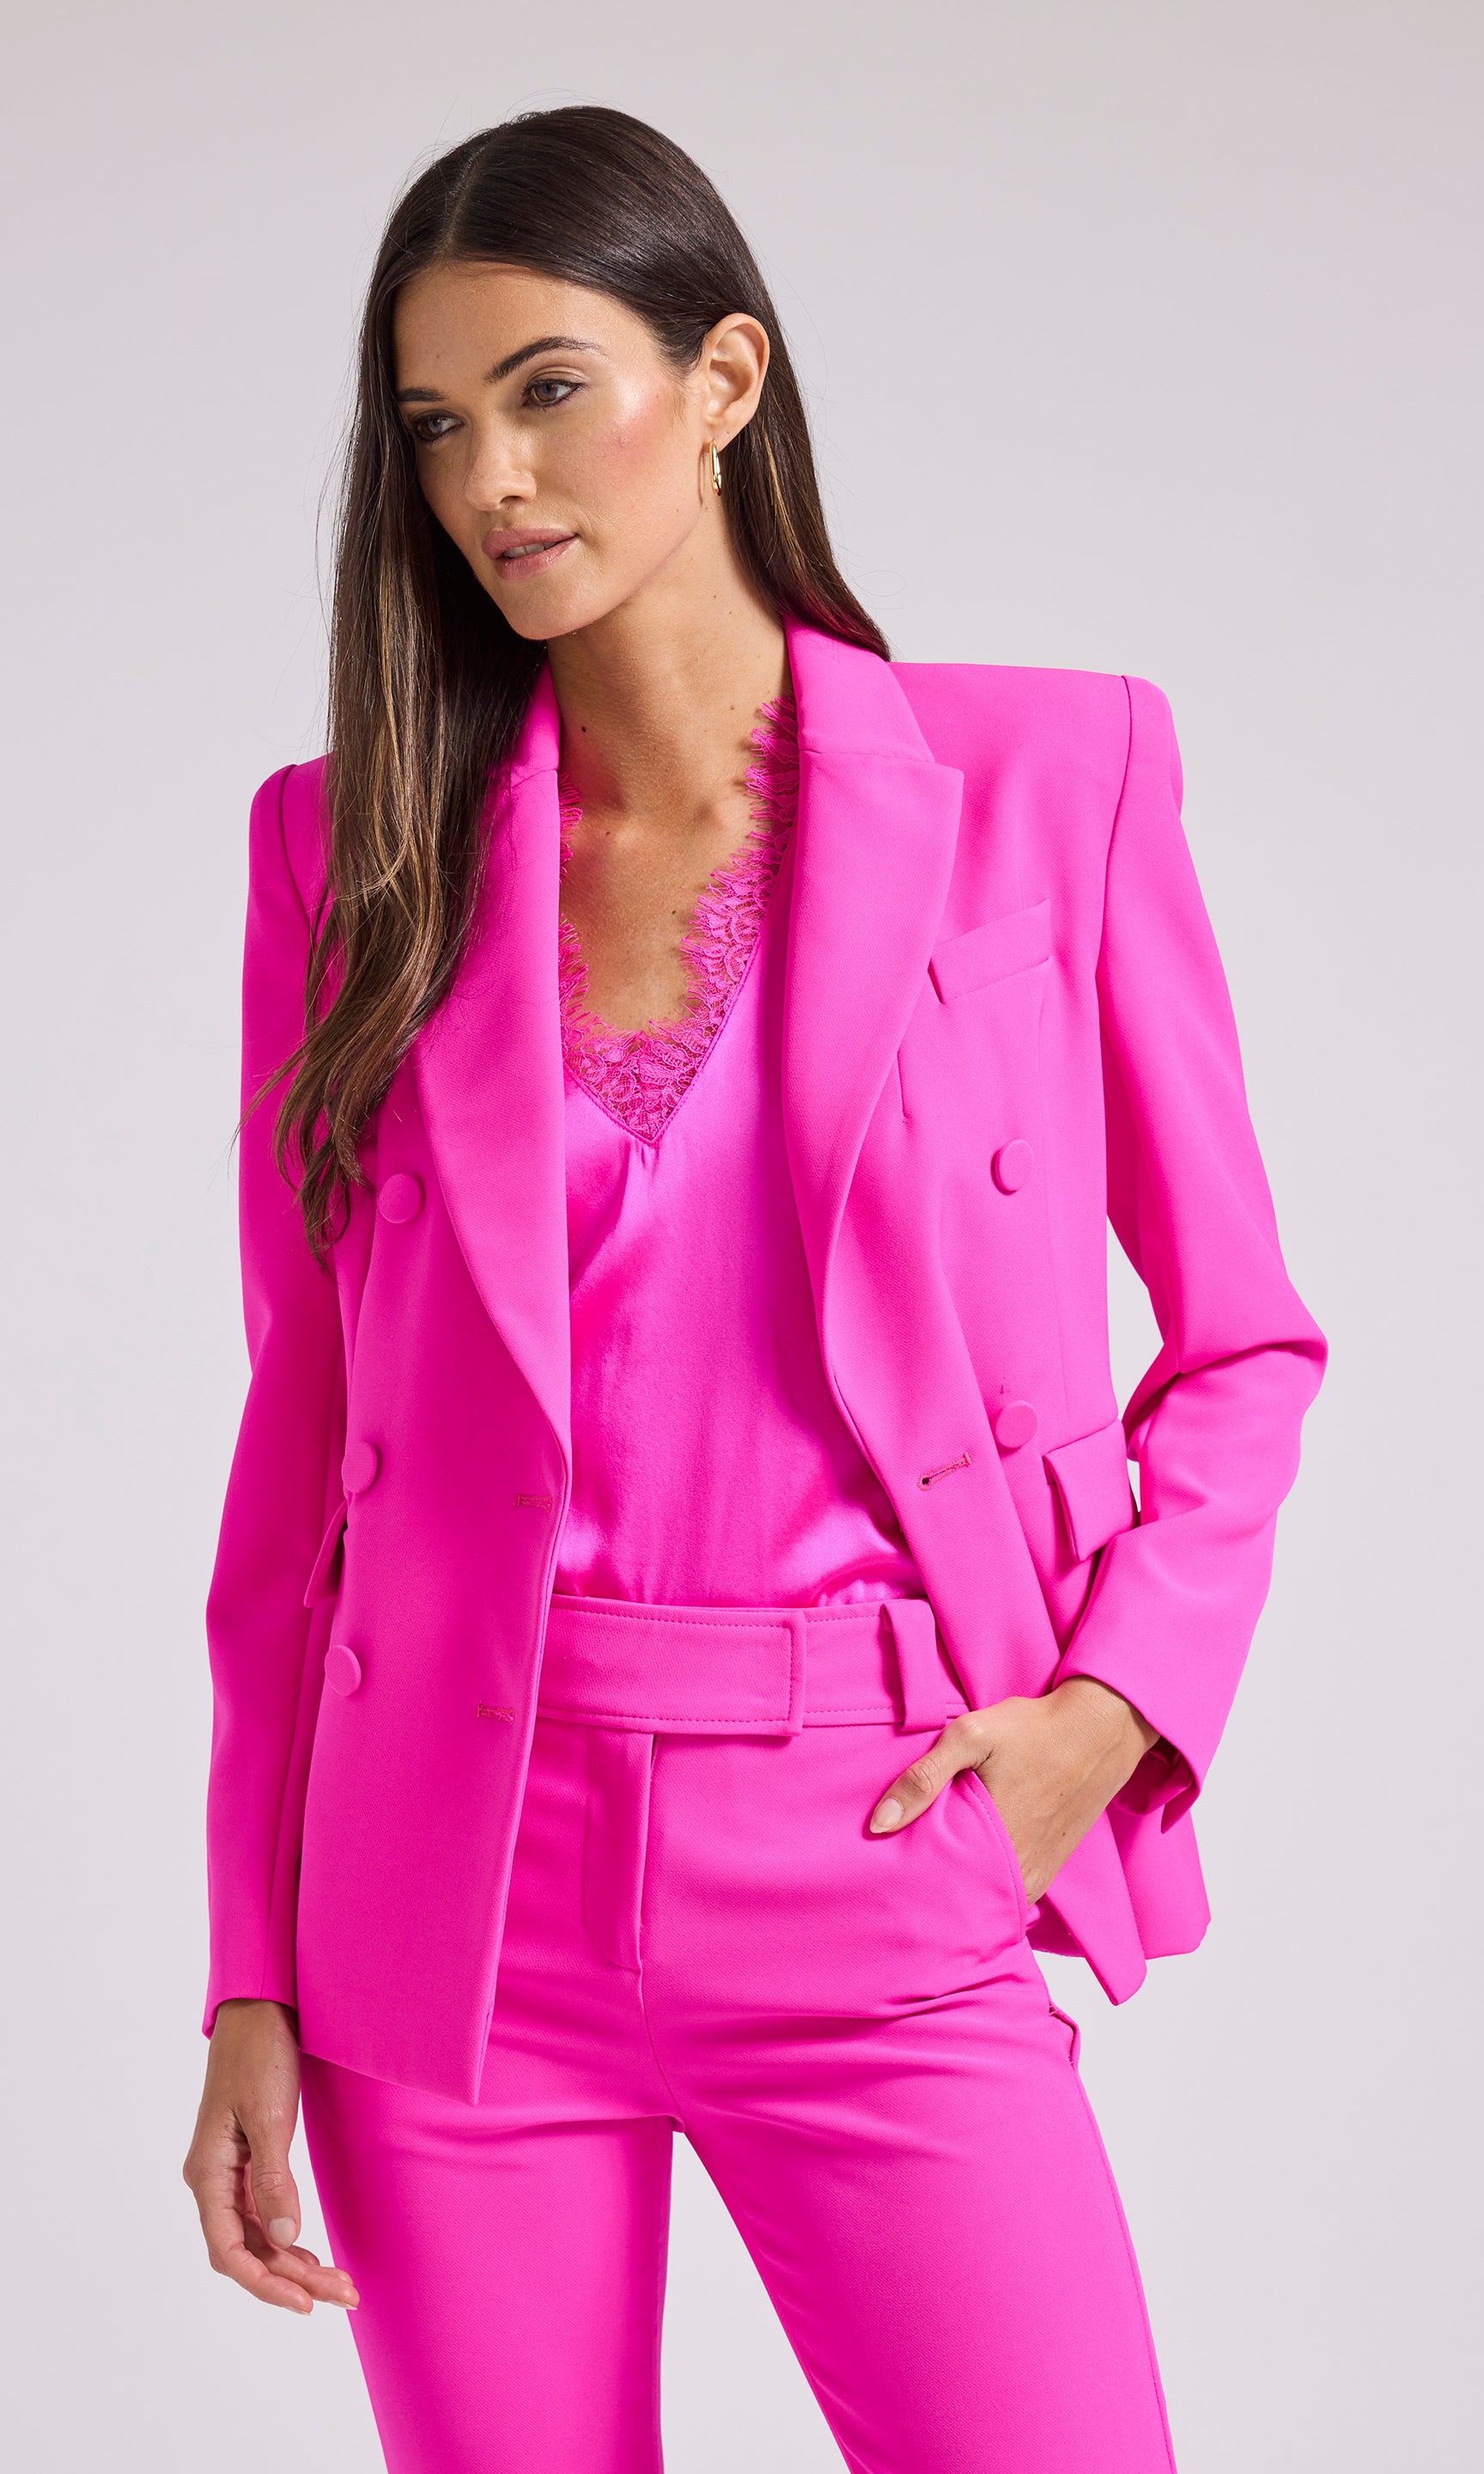 Serena Hot Pink Blazer – The Blaze Her Co